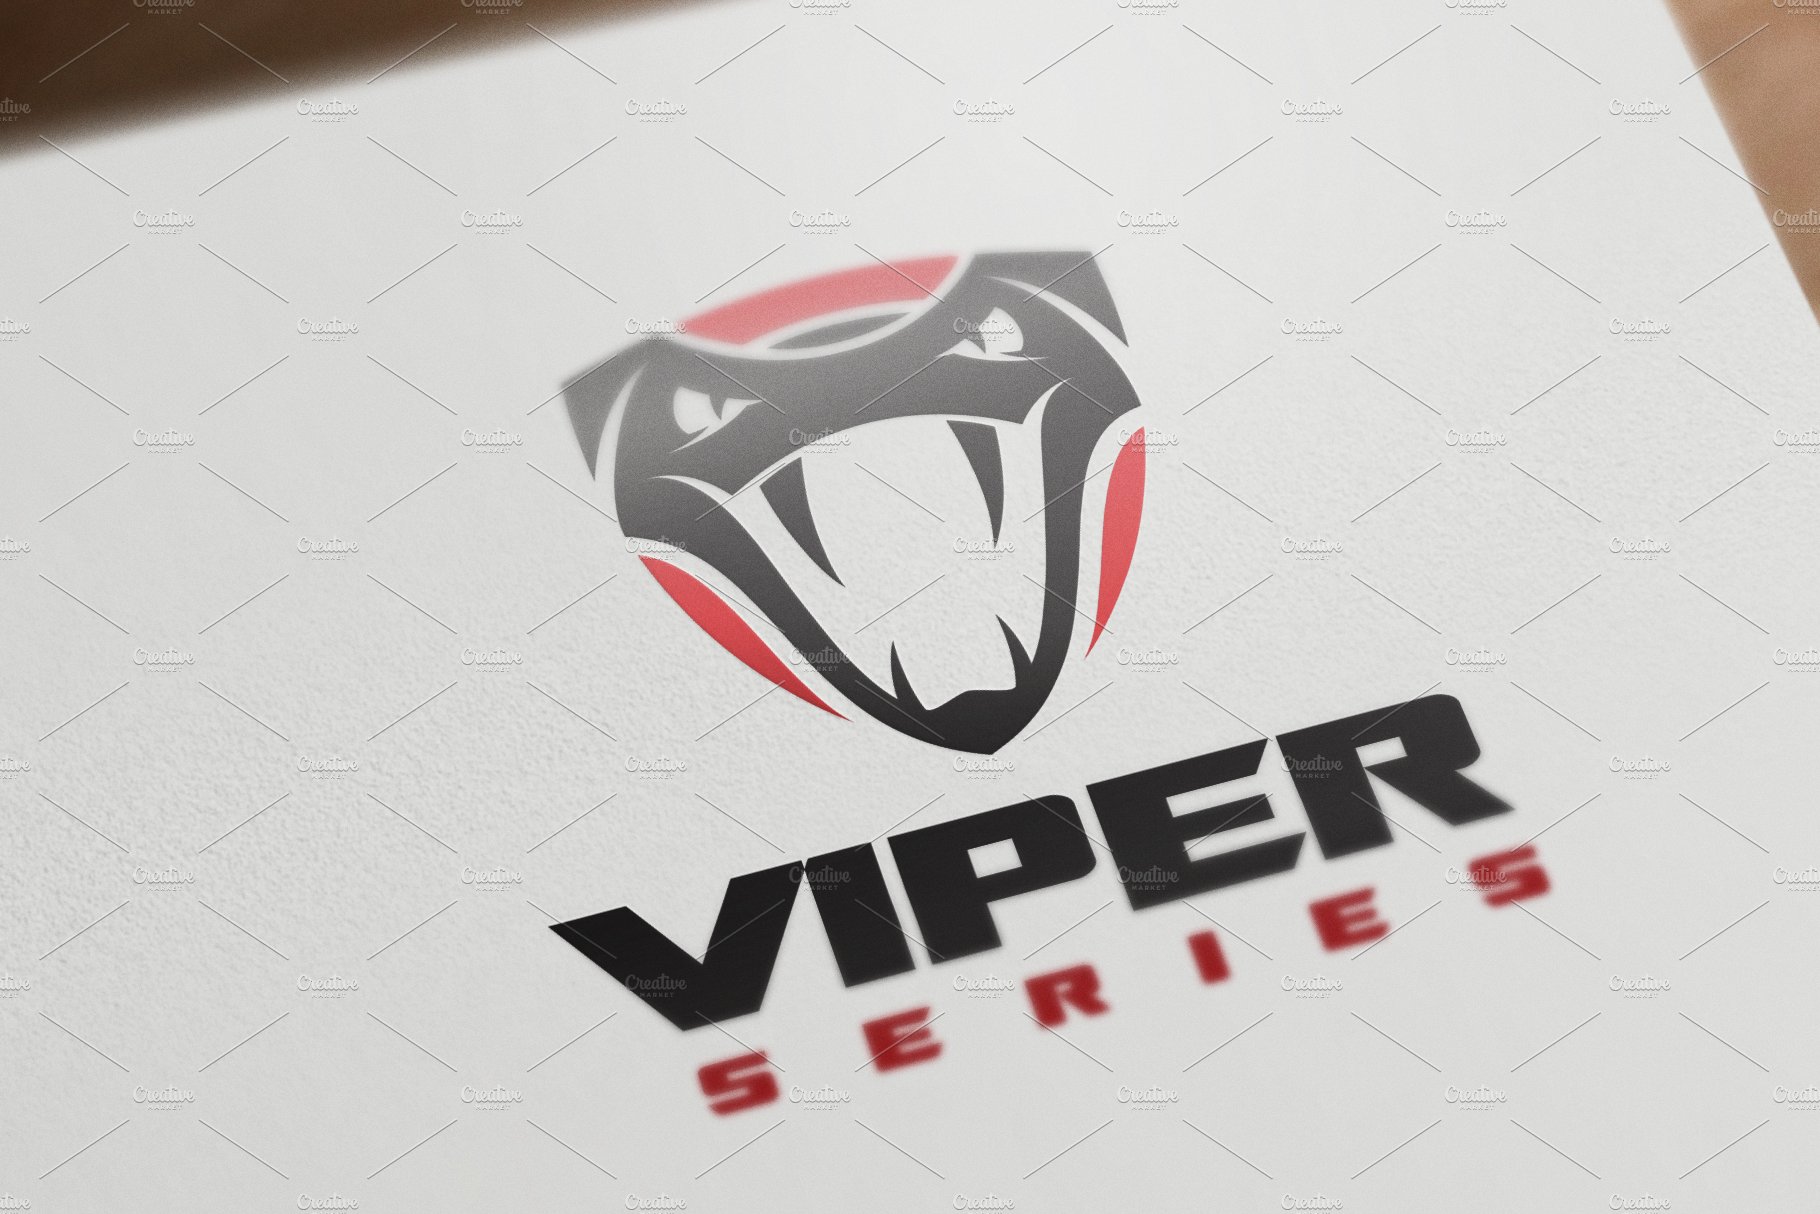 Viper Logo cover image.